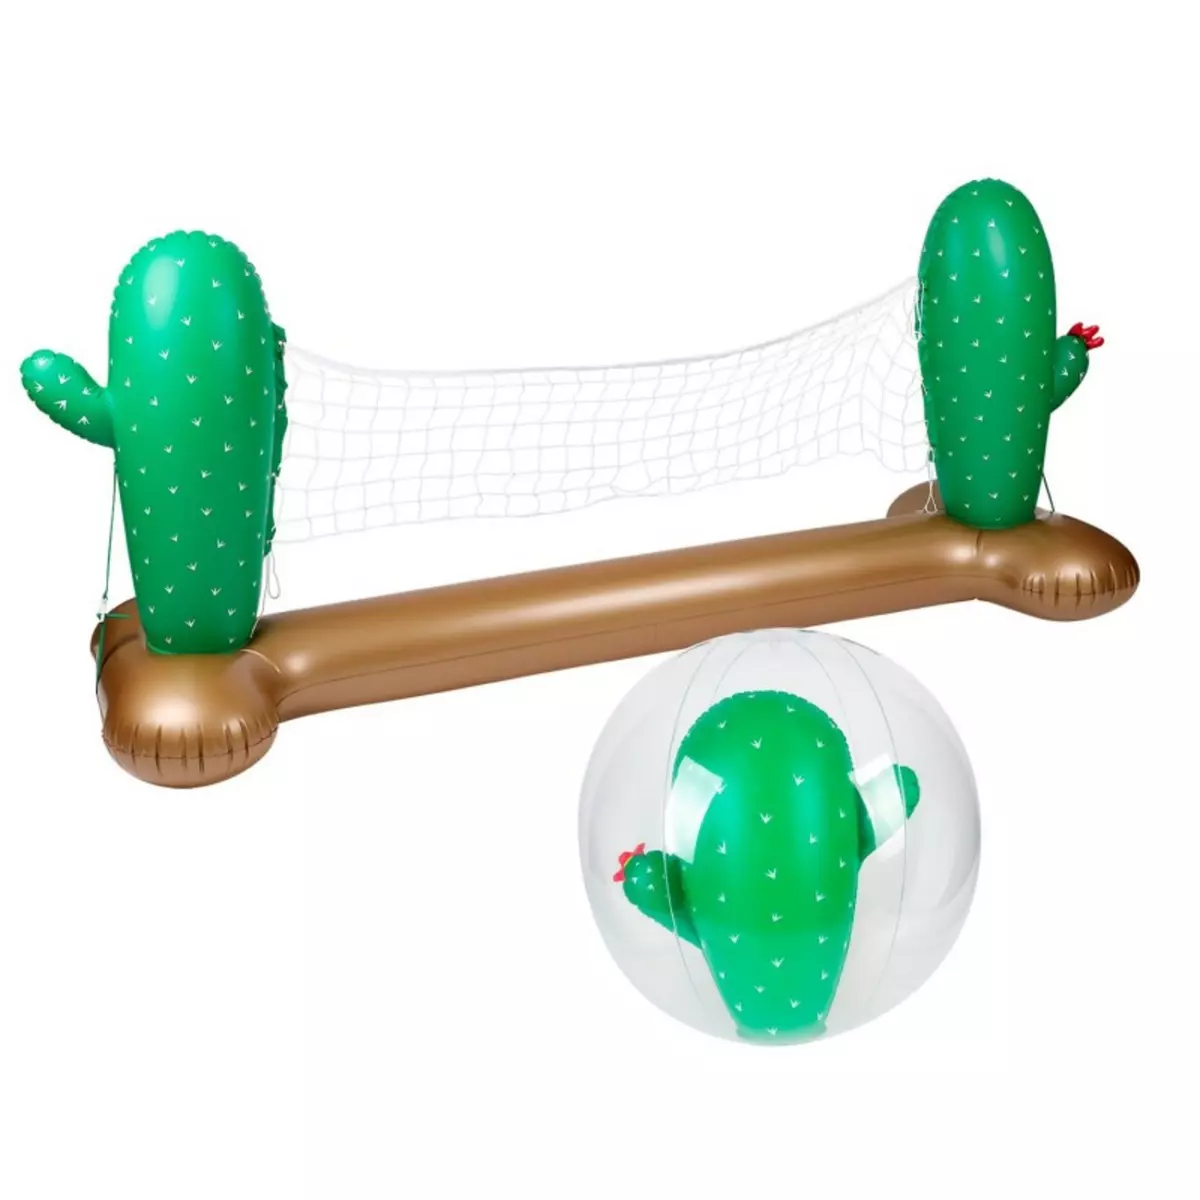 AIRMYFUN Filet de volley Gonflable et Flottant + Ballon Gonflable pour Piscine & Plage - Pack Sport Cactus